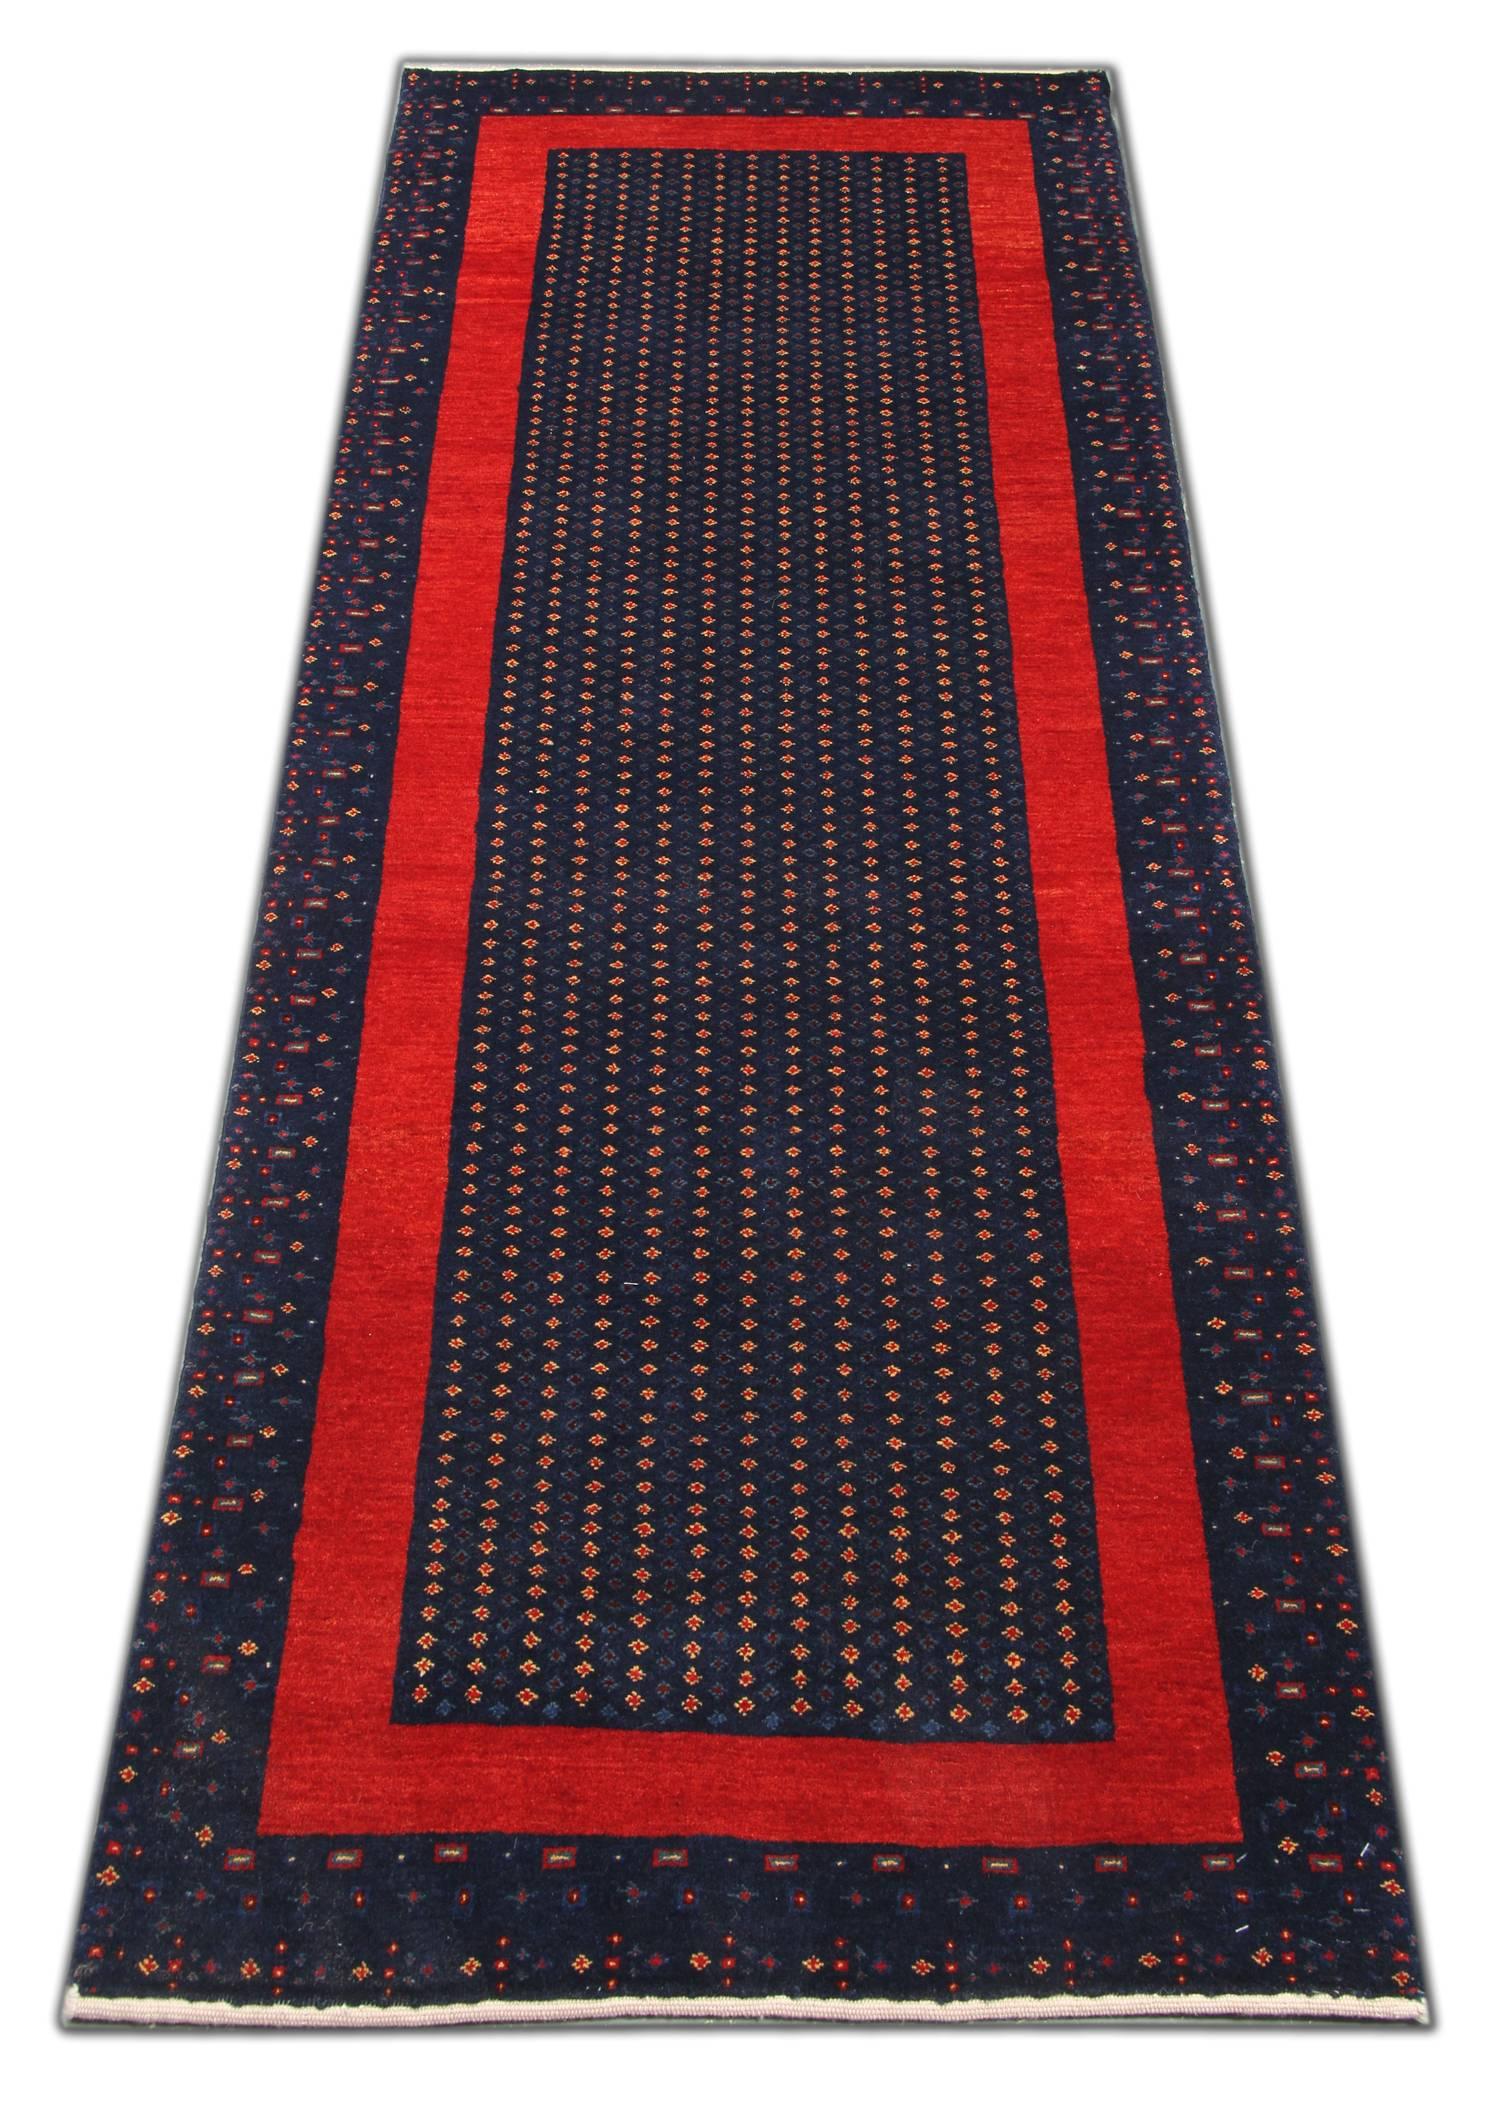 Dieser schlichte, handgewebte Wollteppich zeichnet sich durch einen tiefblauen Hintergrund mit einem einfachen, sich wiederholenden Muster aus gepunkteten Motiven und einer kräftigen, linearen Bordüre in kontrastierendem Rot aus. Dieser Teppich ist